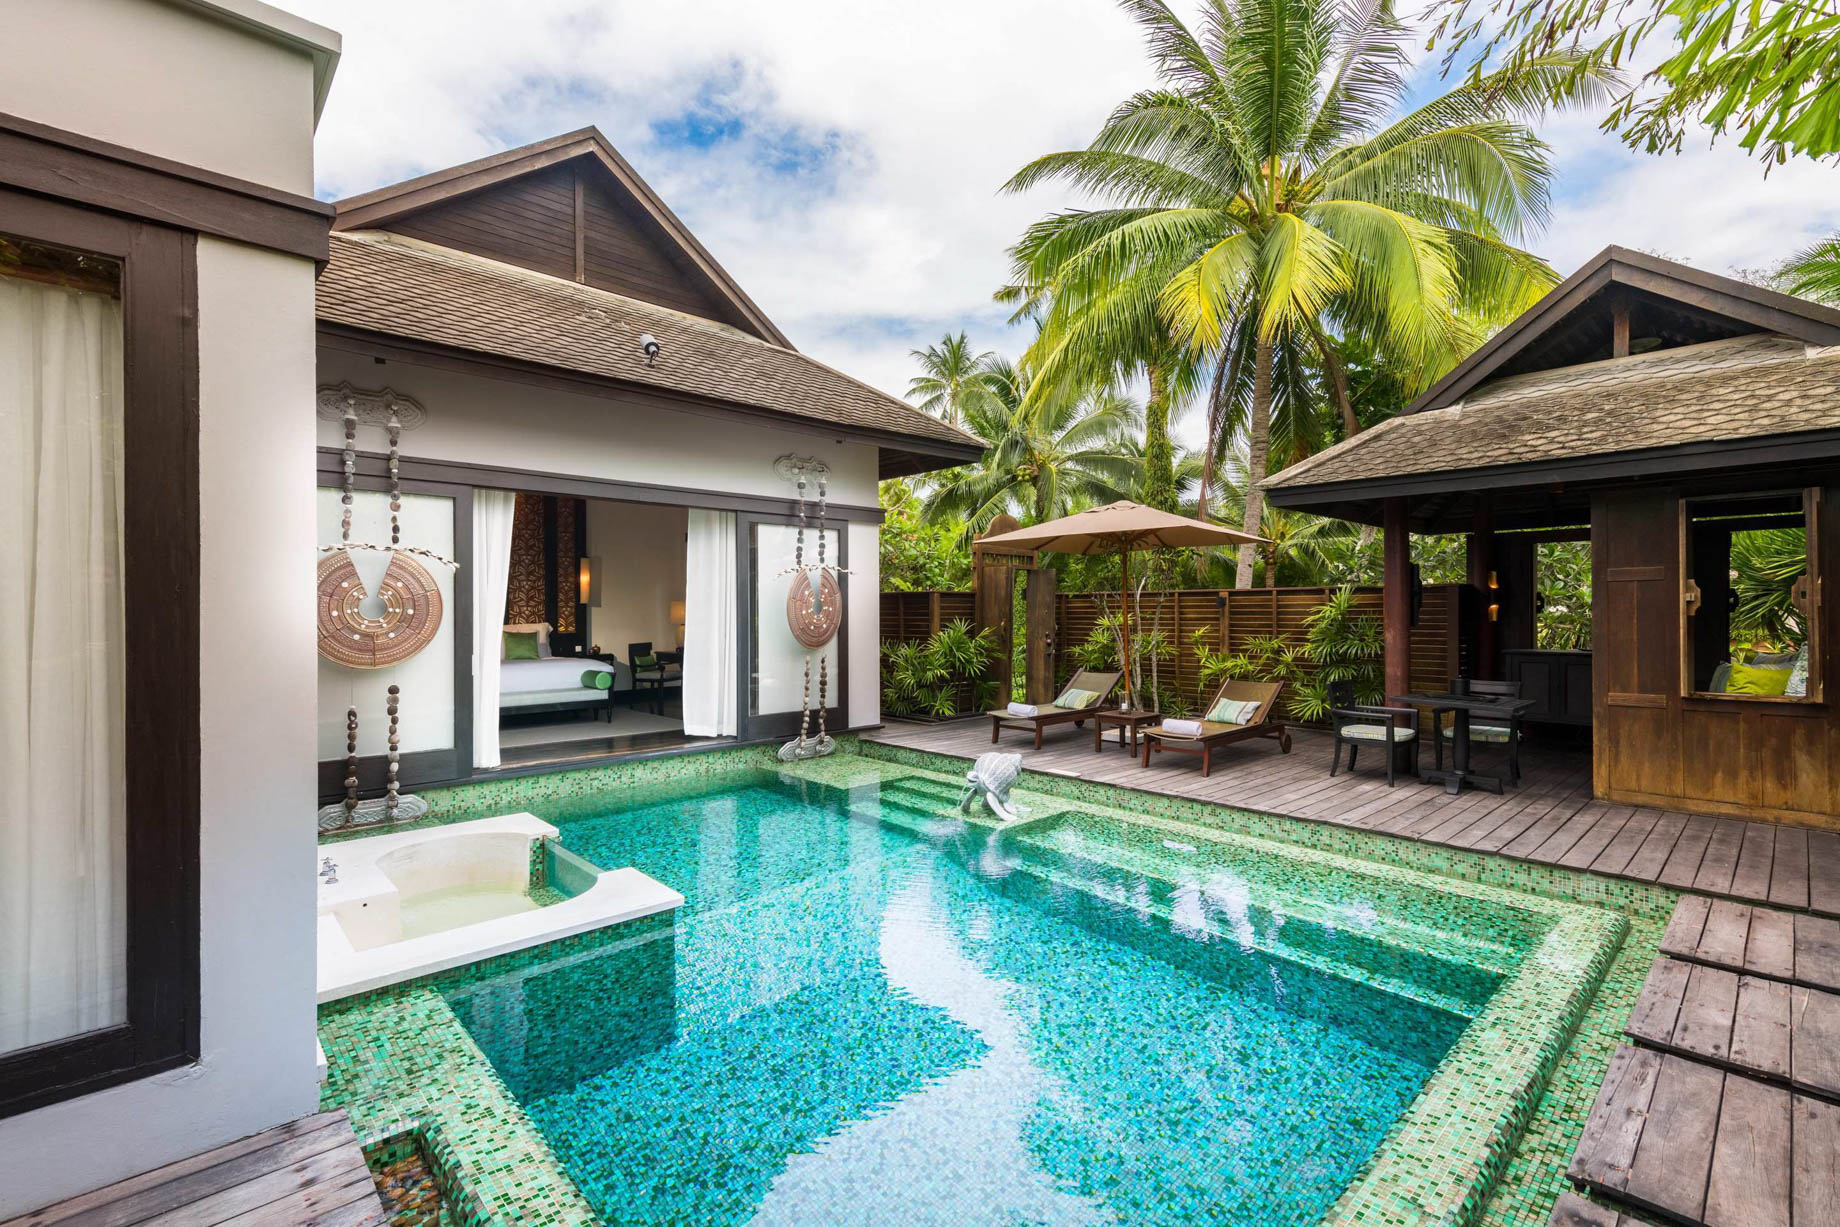 Anantara Mai Khao Phuket Villas Resort – Thailand – Villa Pool